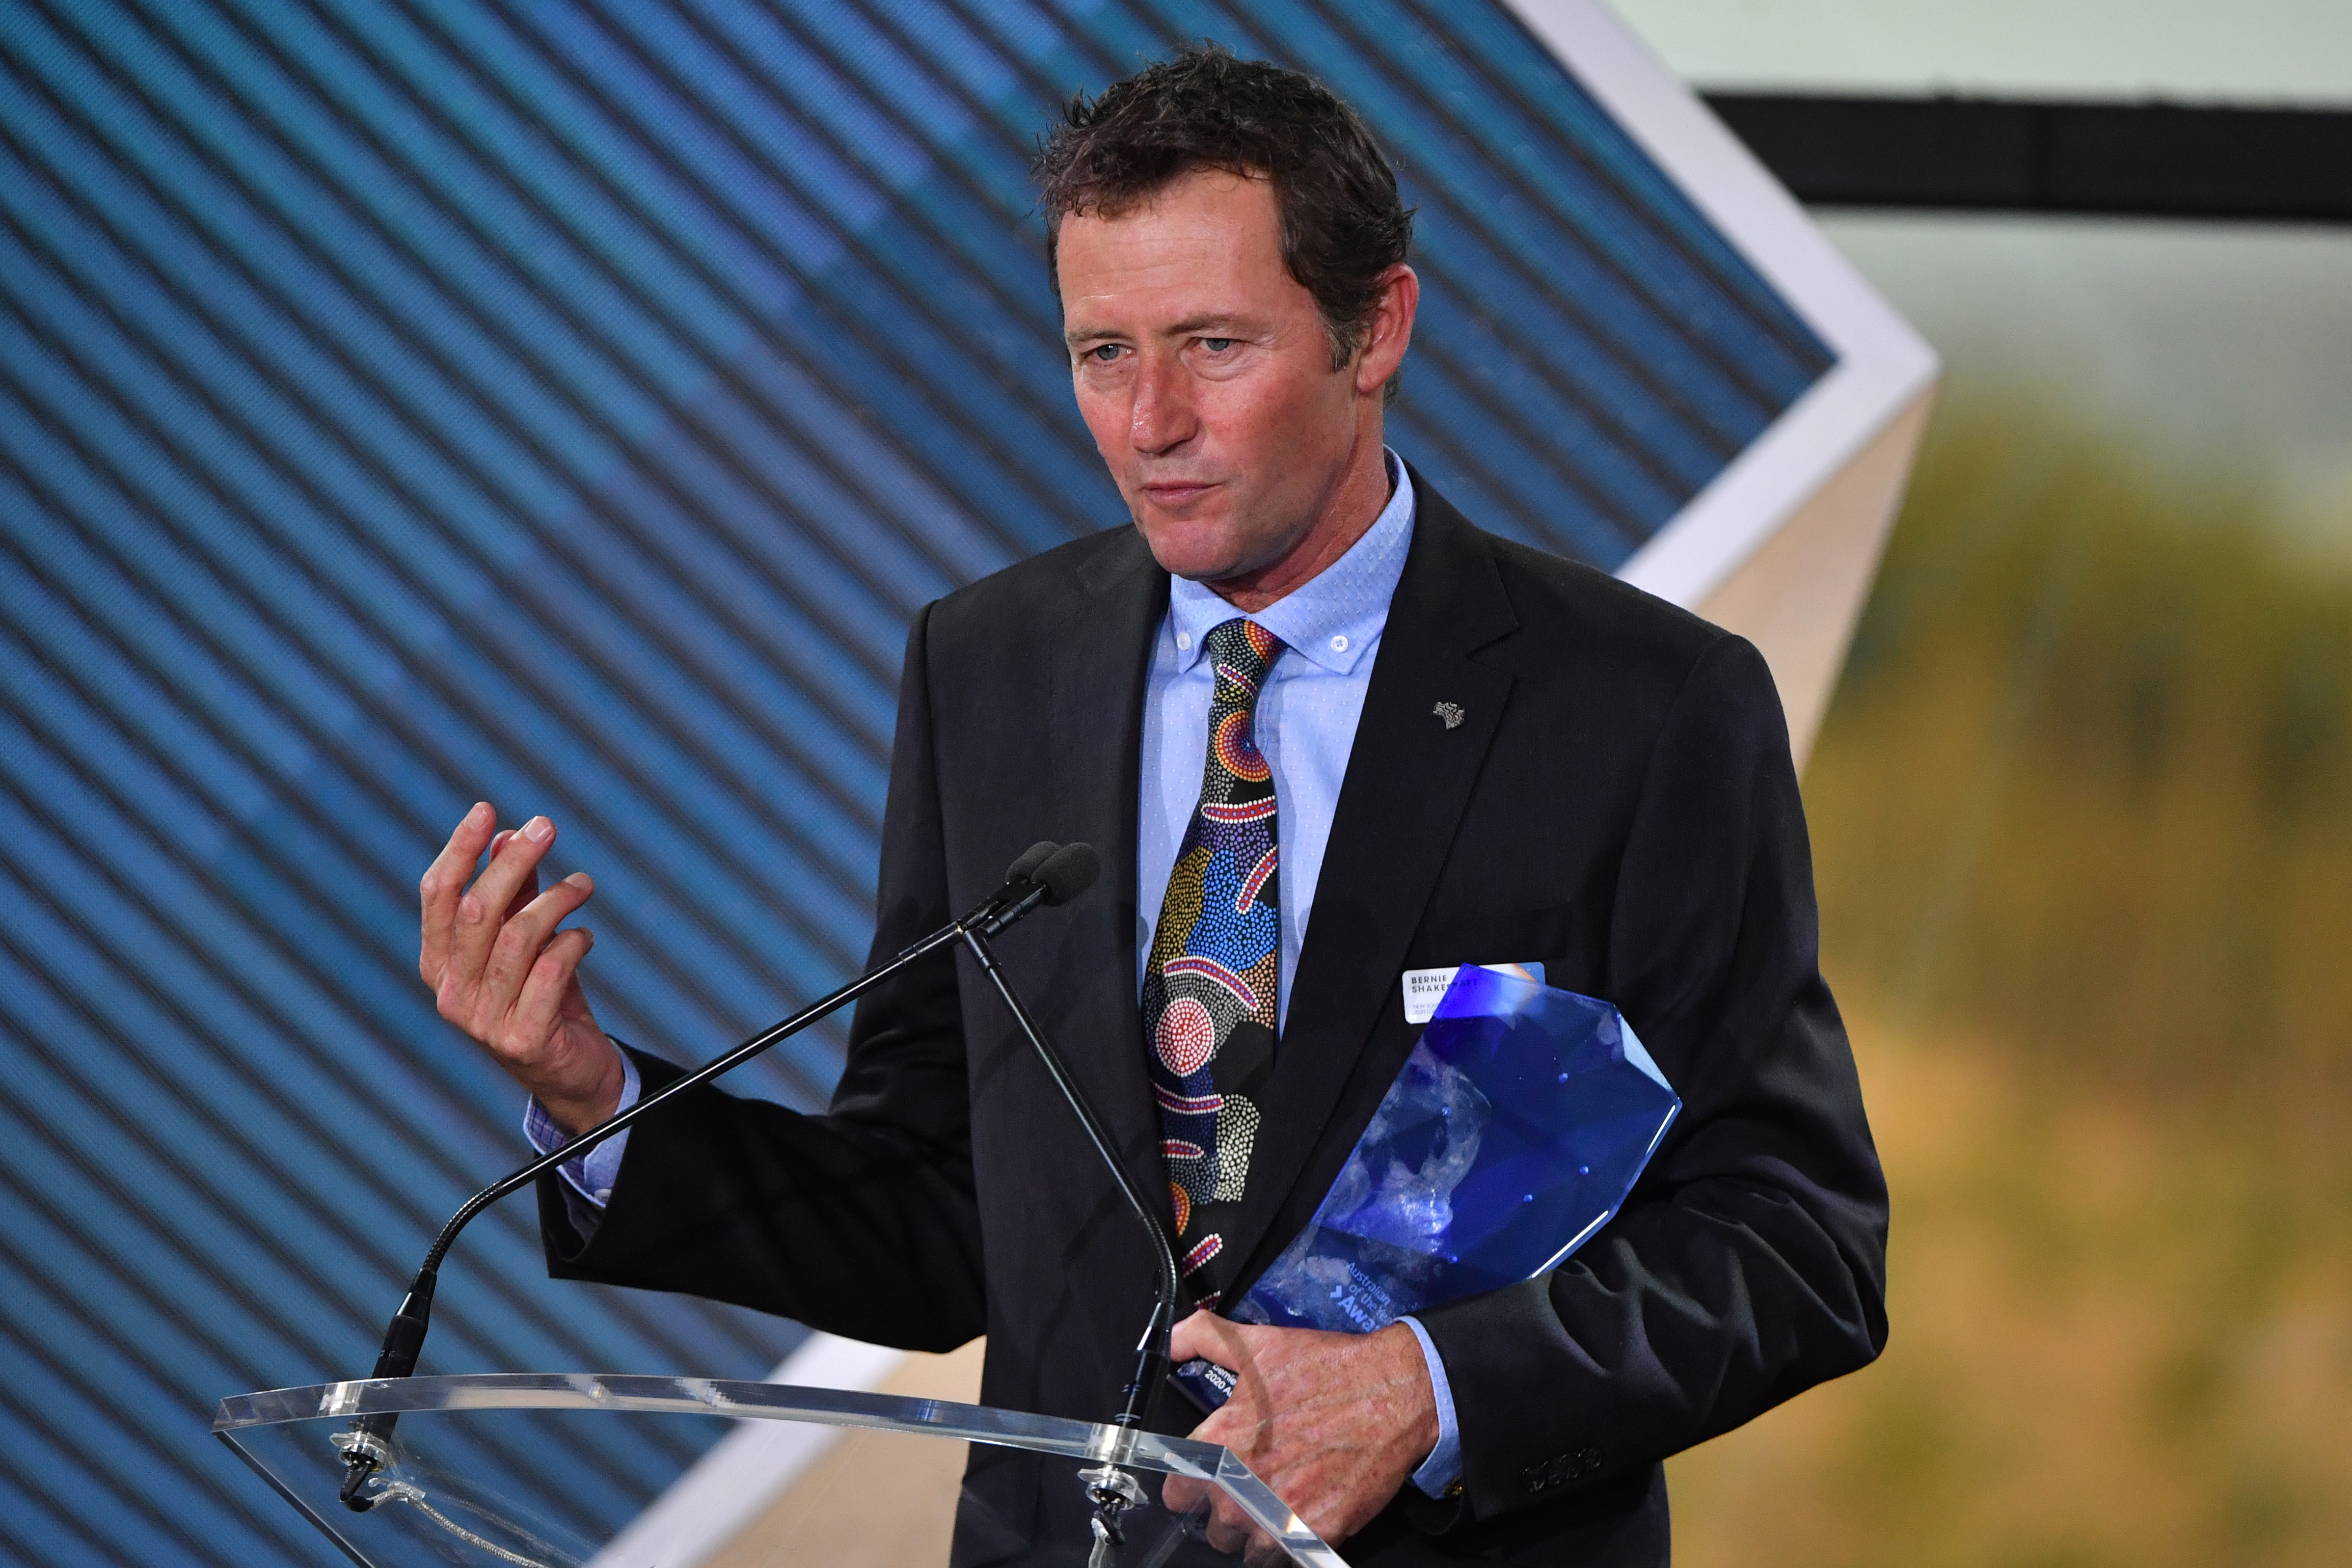 2020 Local Hero winner Bernie Shakeshaft during the 2020 Australian of the Year Awards.